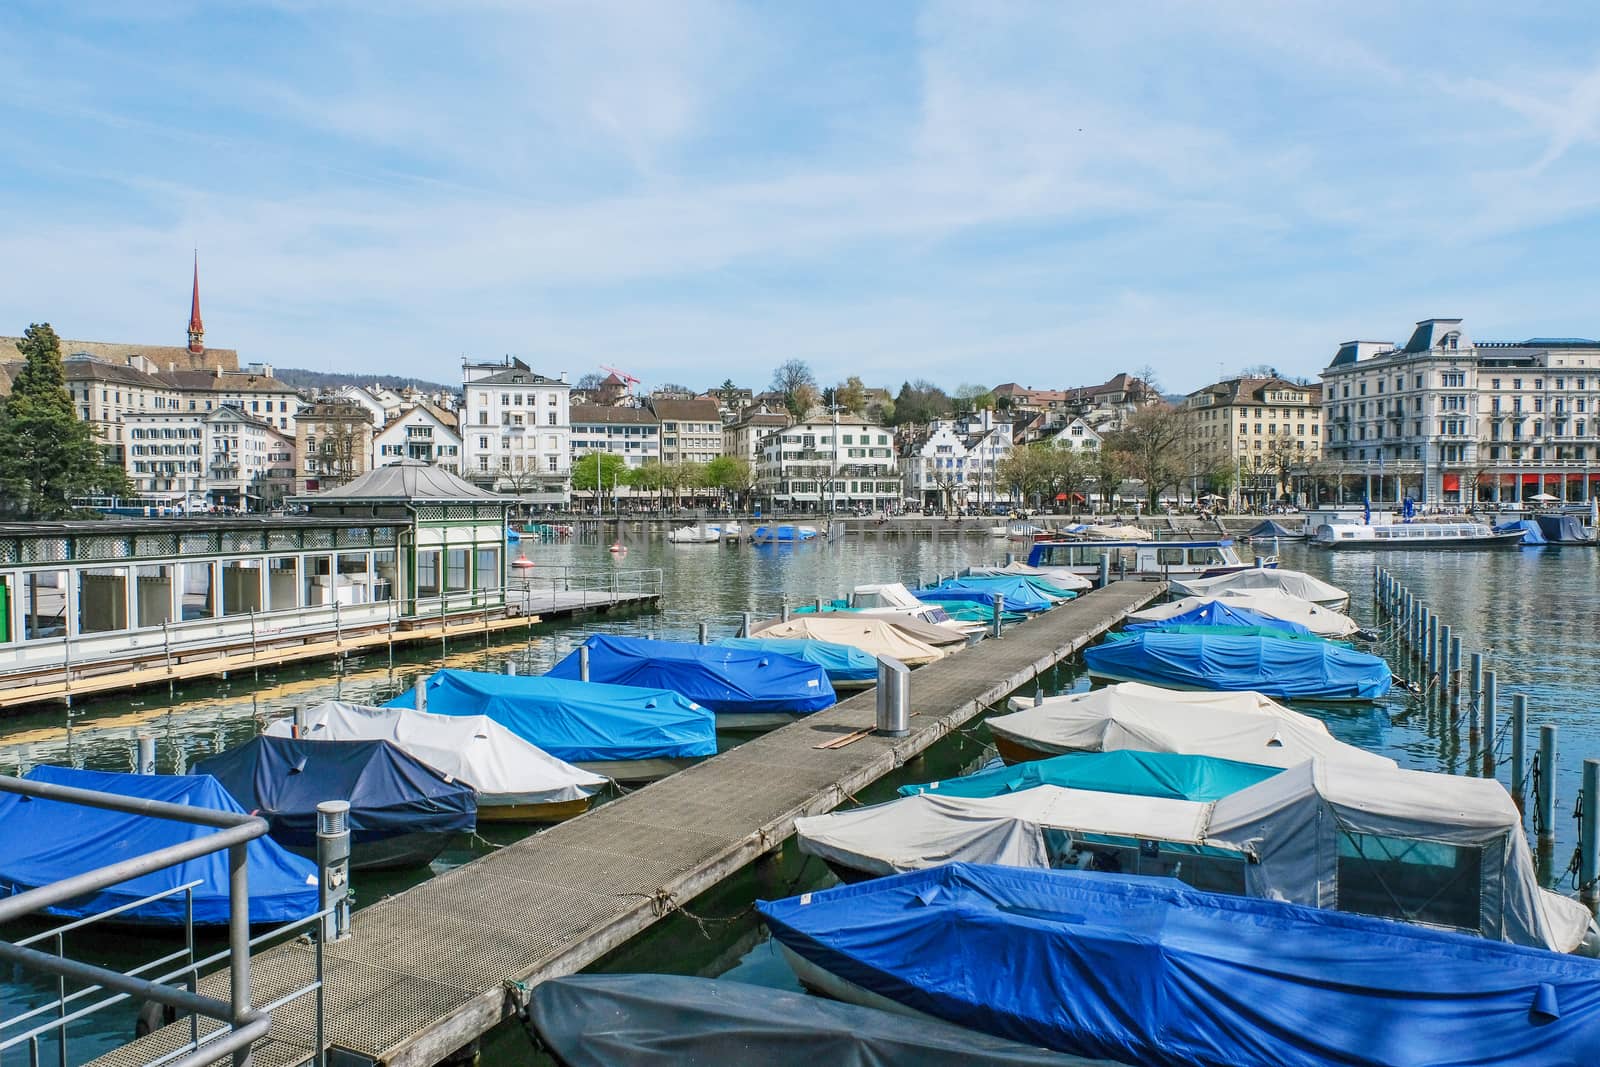   Luxury Marina Boats In Zurich, Switzerland by Surasak